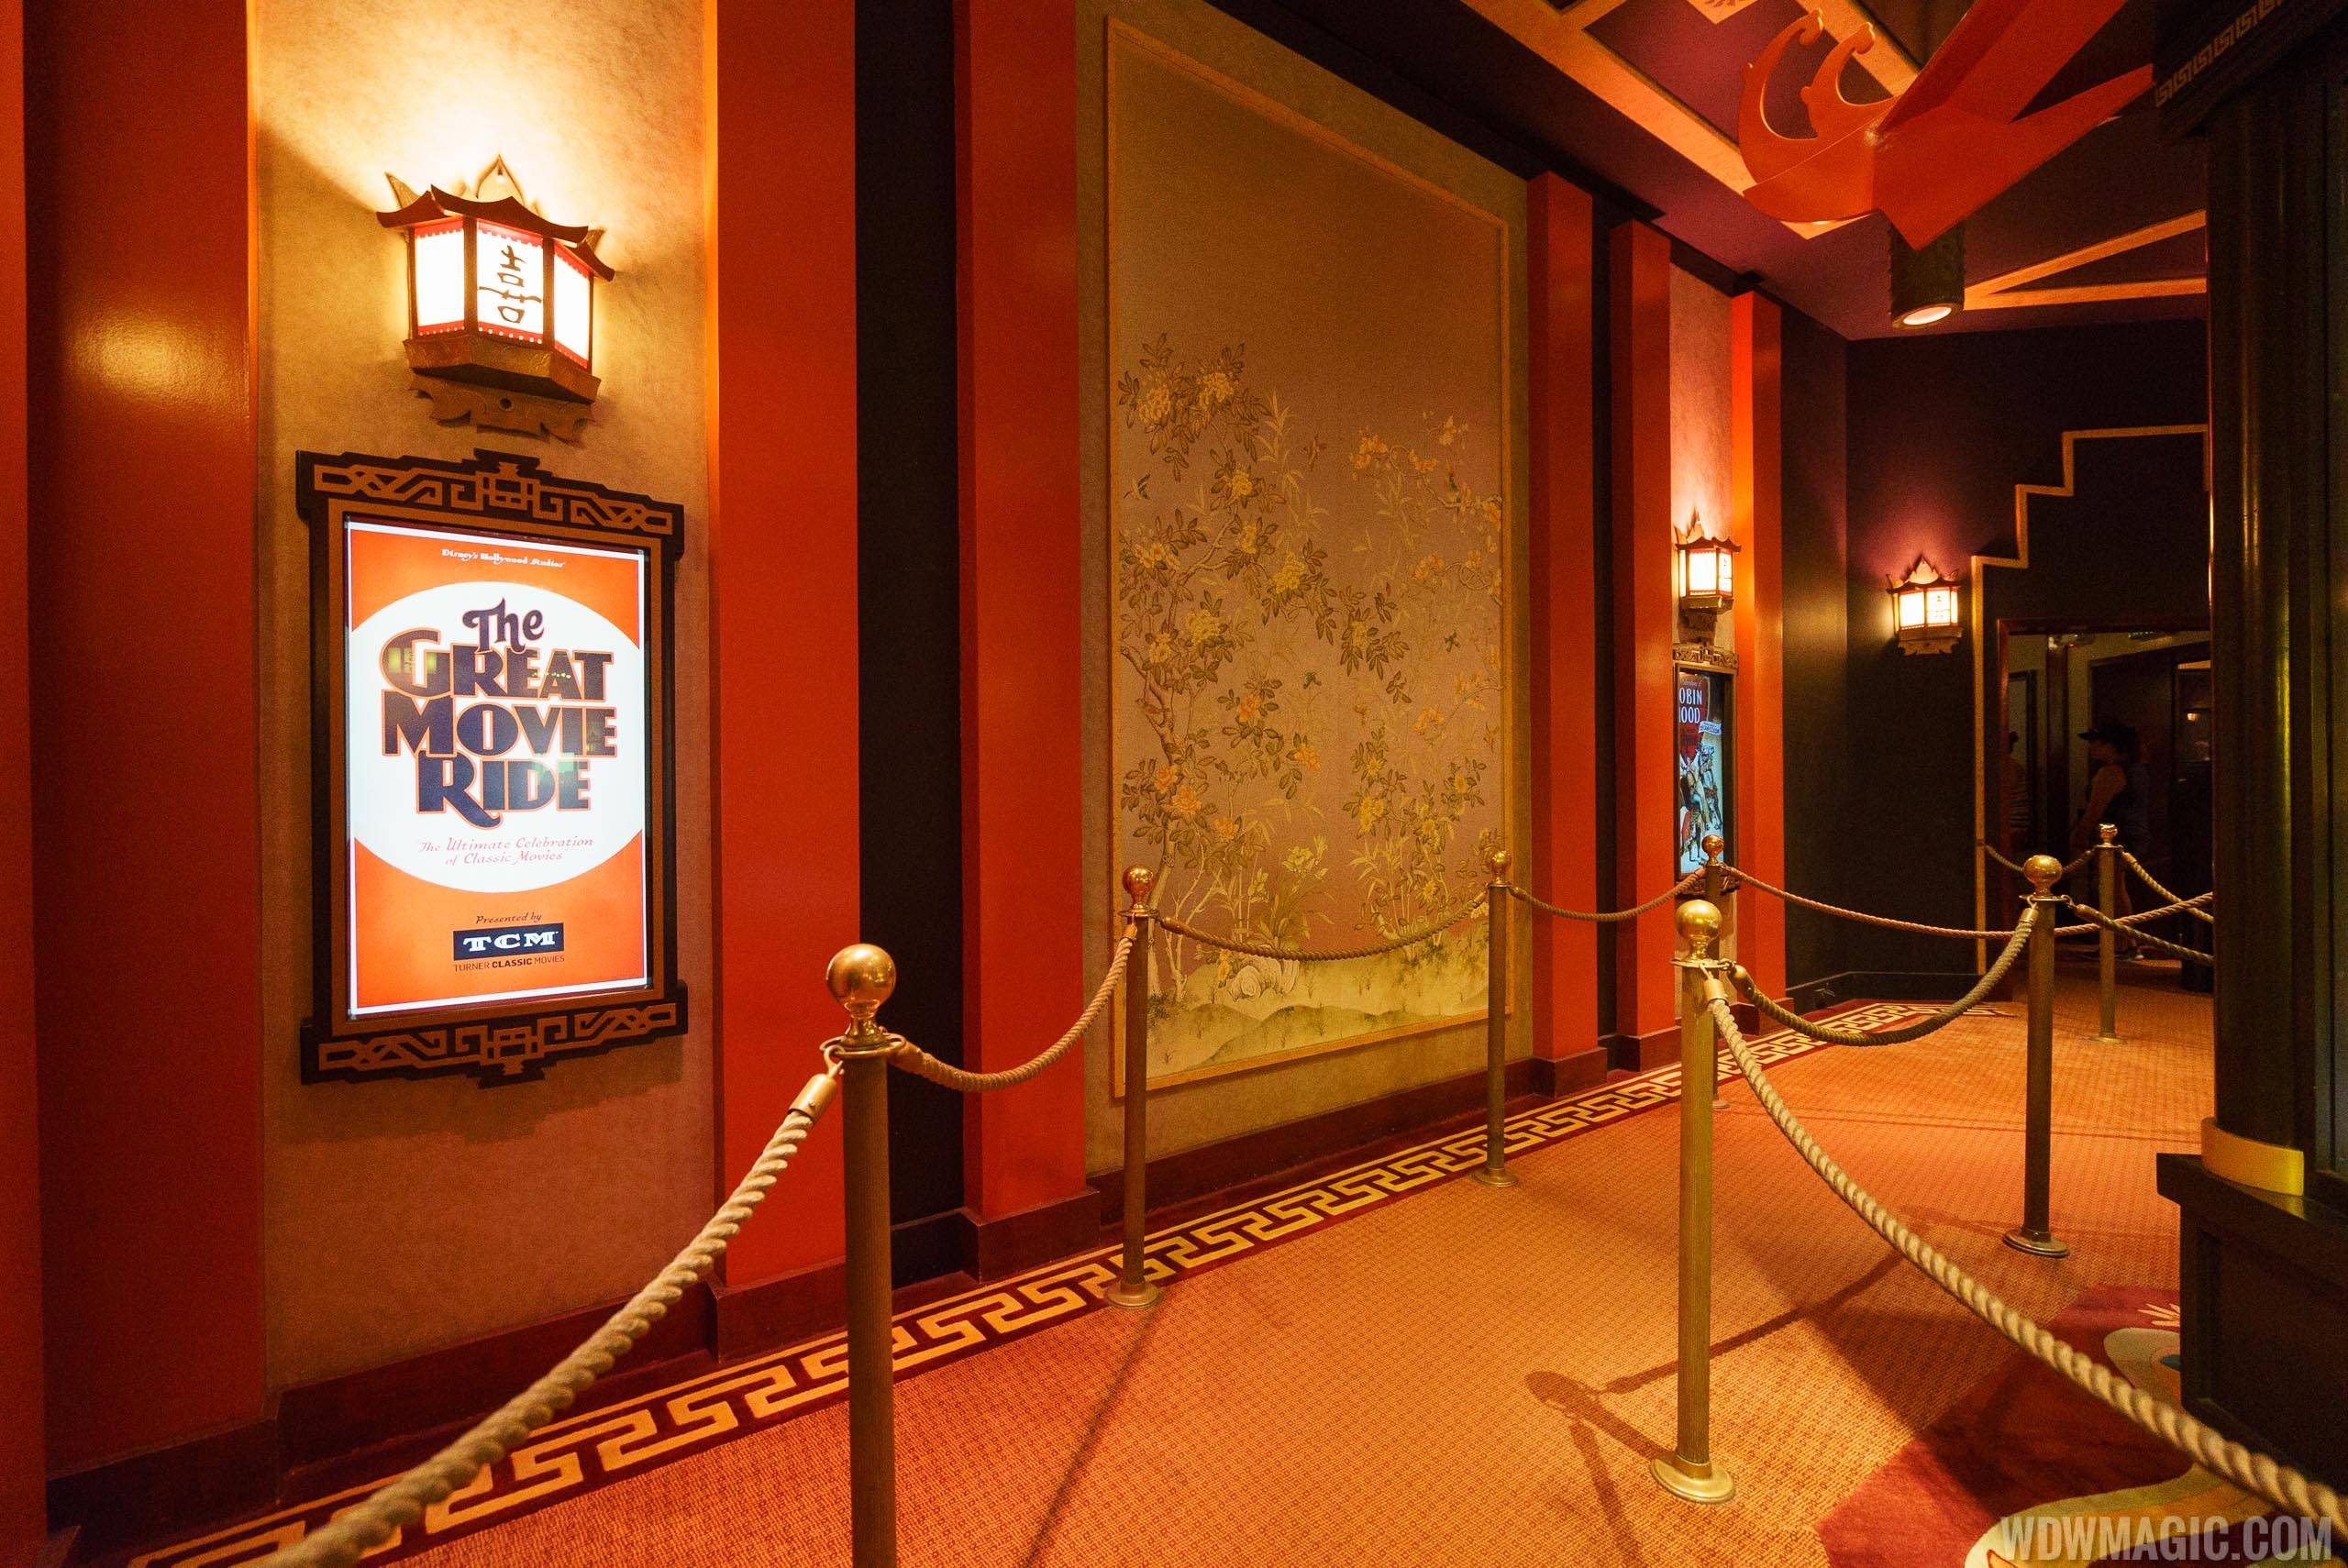 The Great Movie Ride - Queue area exhibits